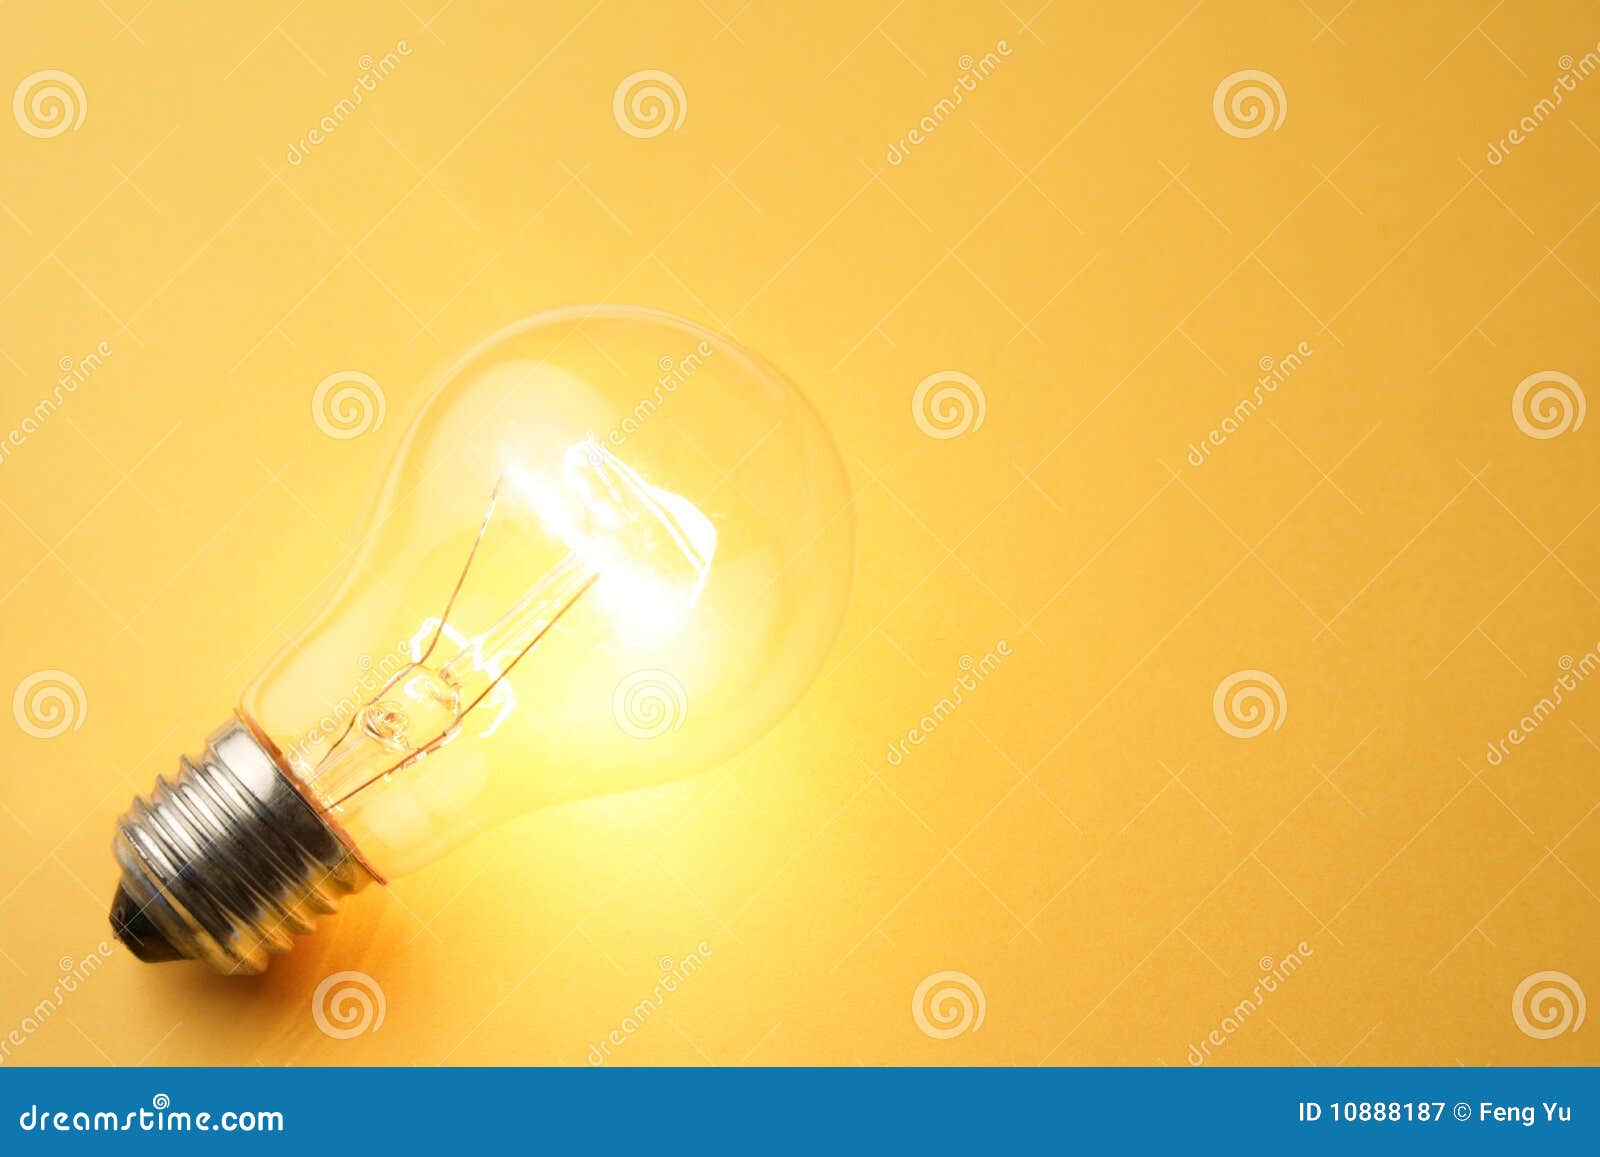 bright light bulb